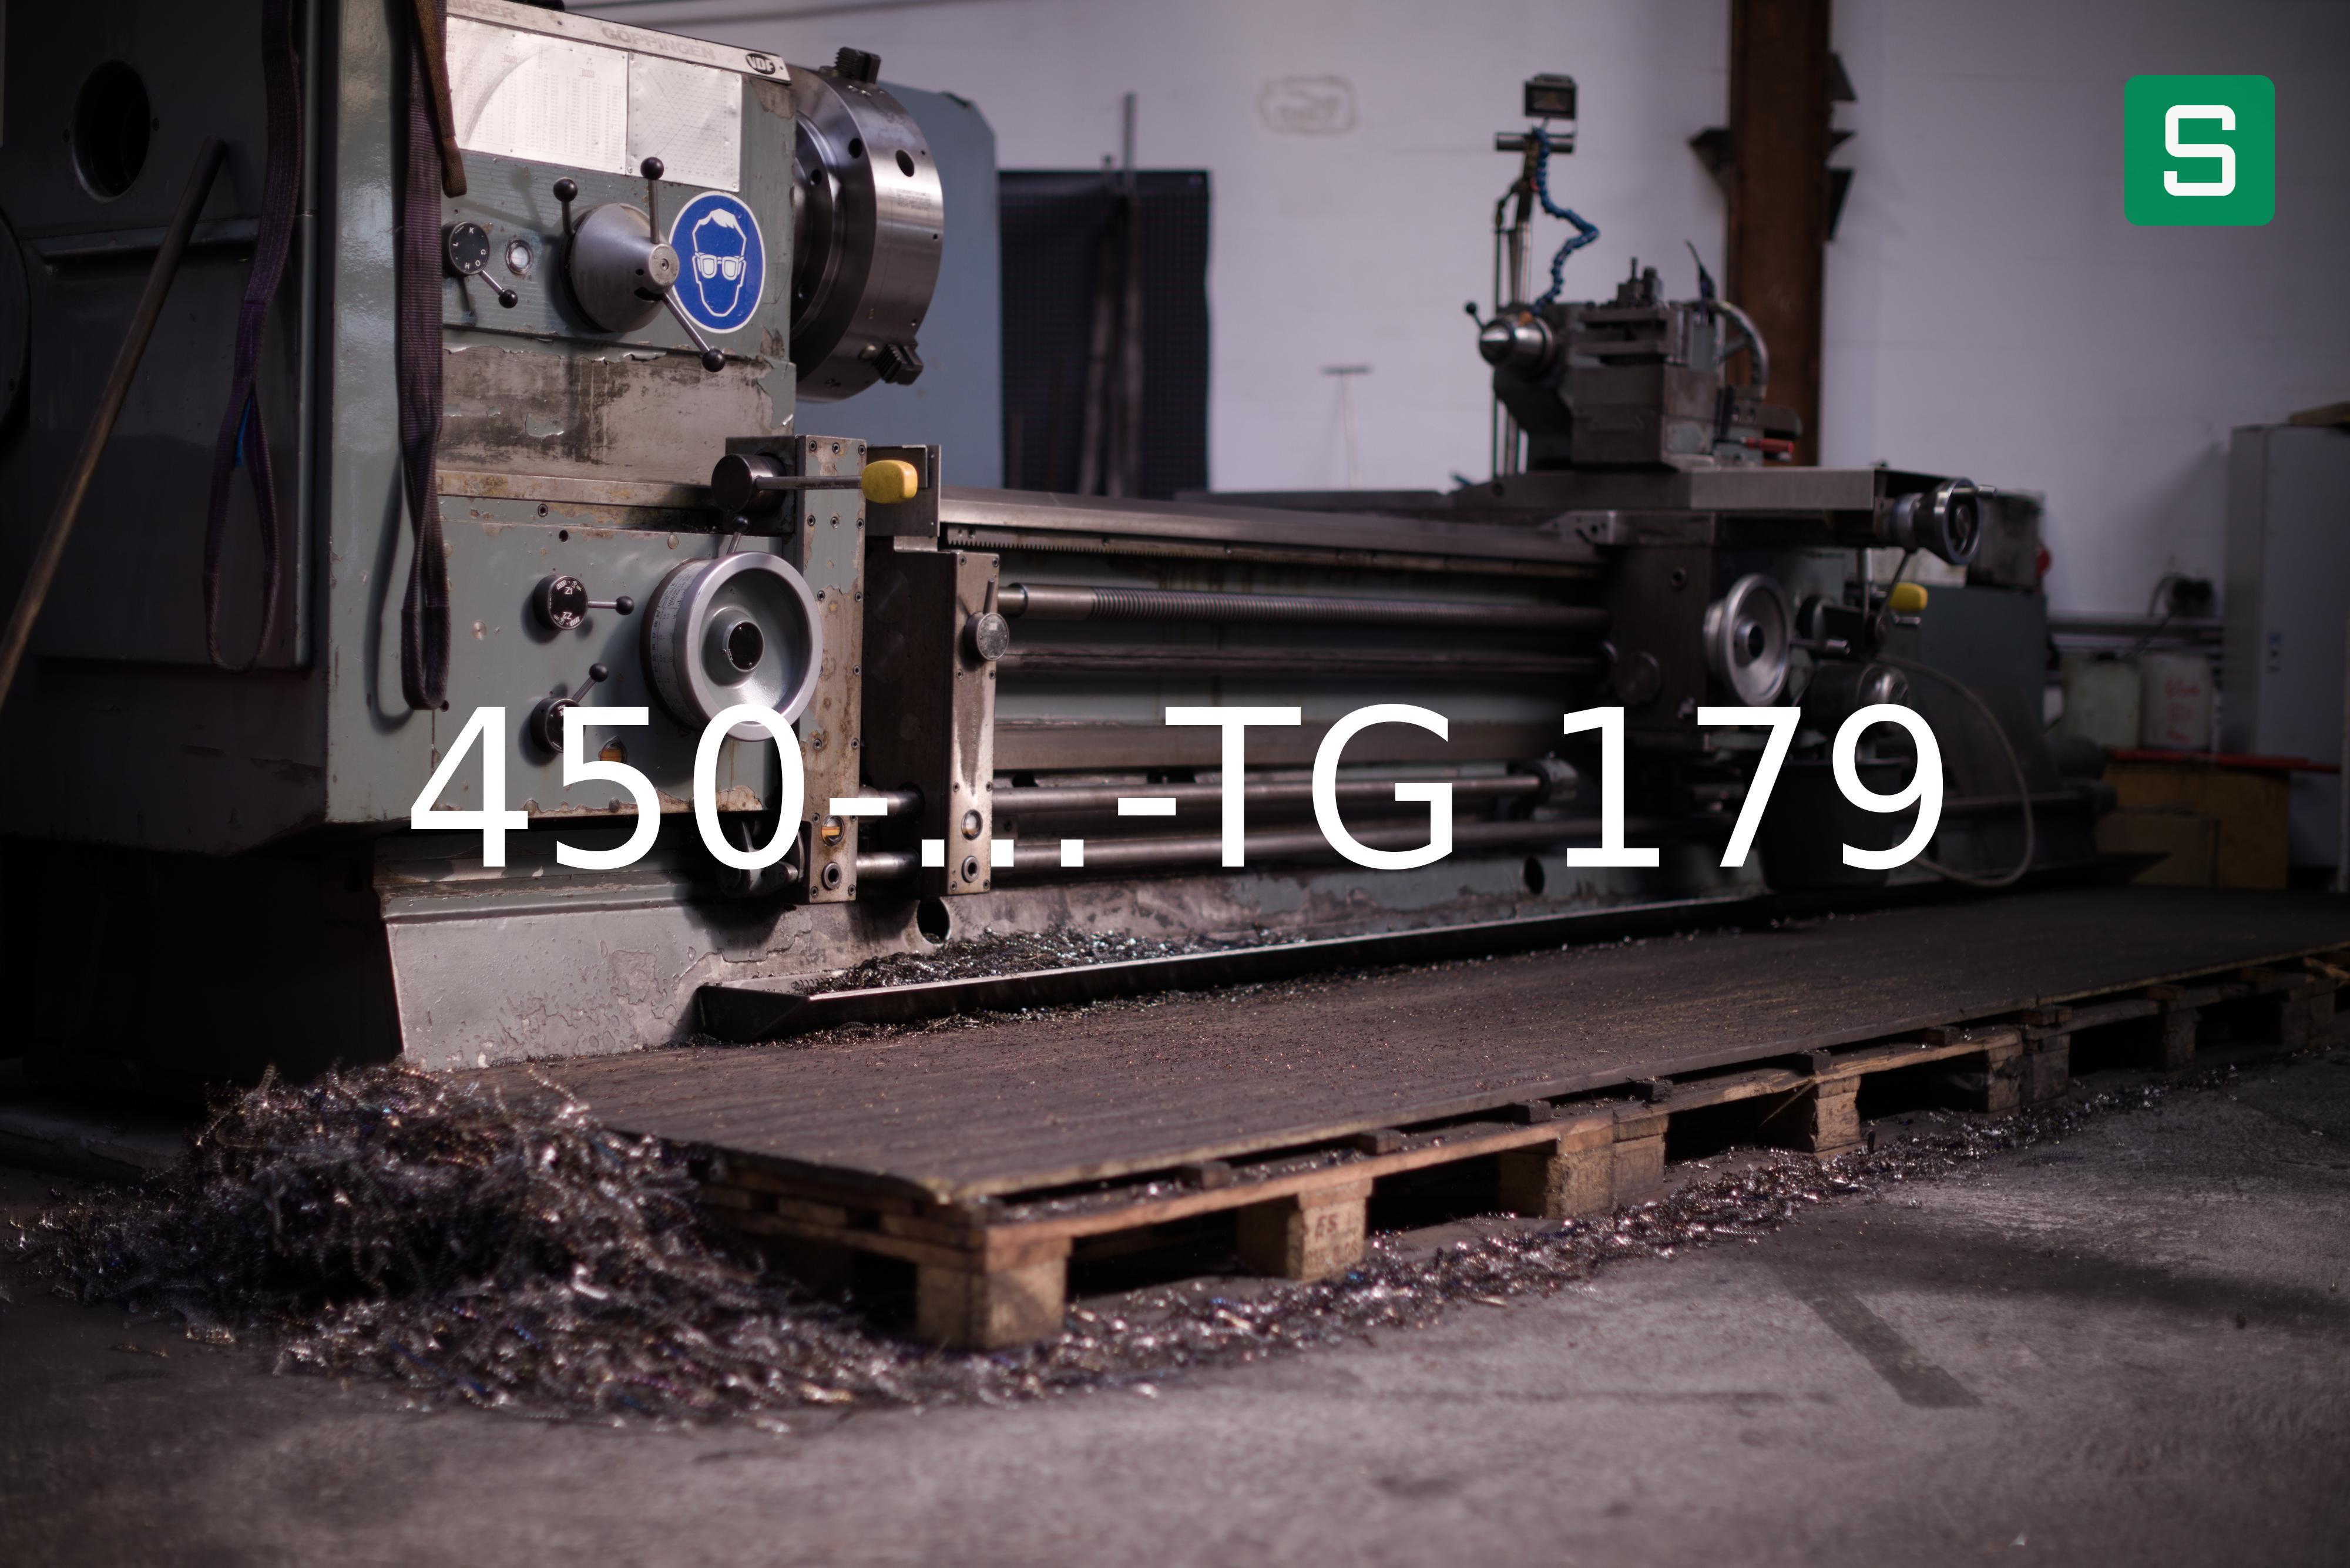 Steel Material: 450-...-TG 179